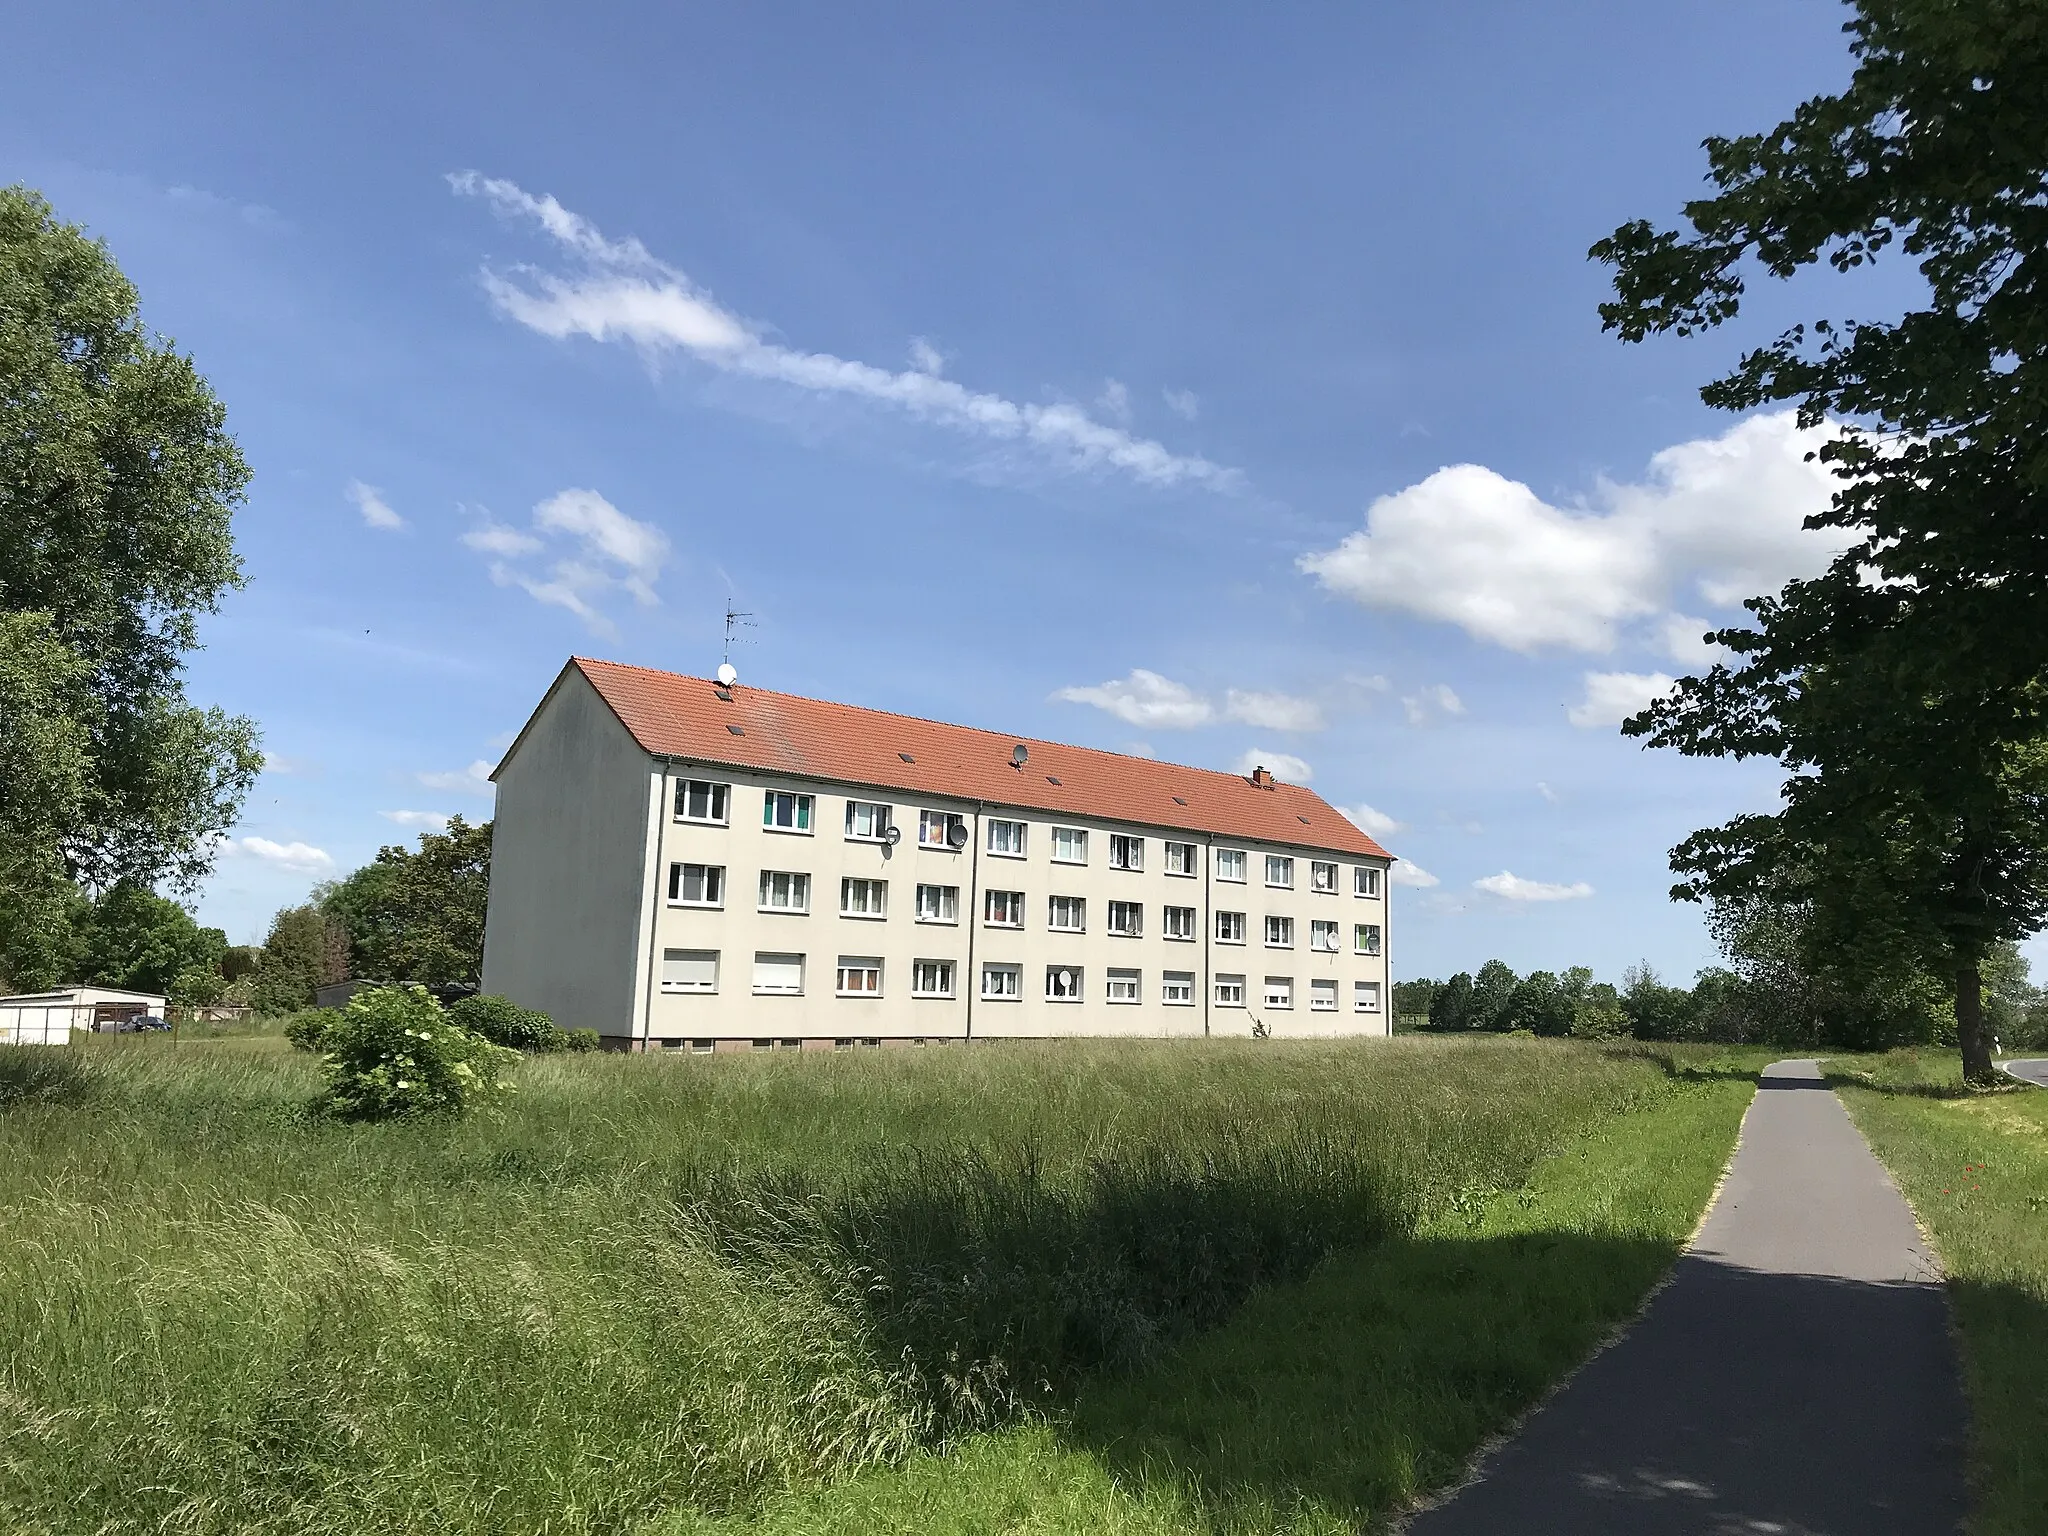 Photo showing: Neukammer ist ein Ortsteil der Stadt Nauen im Landkreis Havelland des Landes Brandenburg.